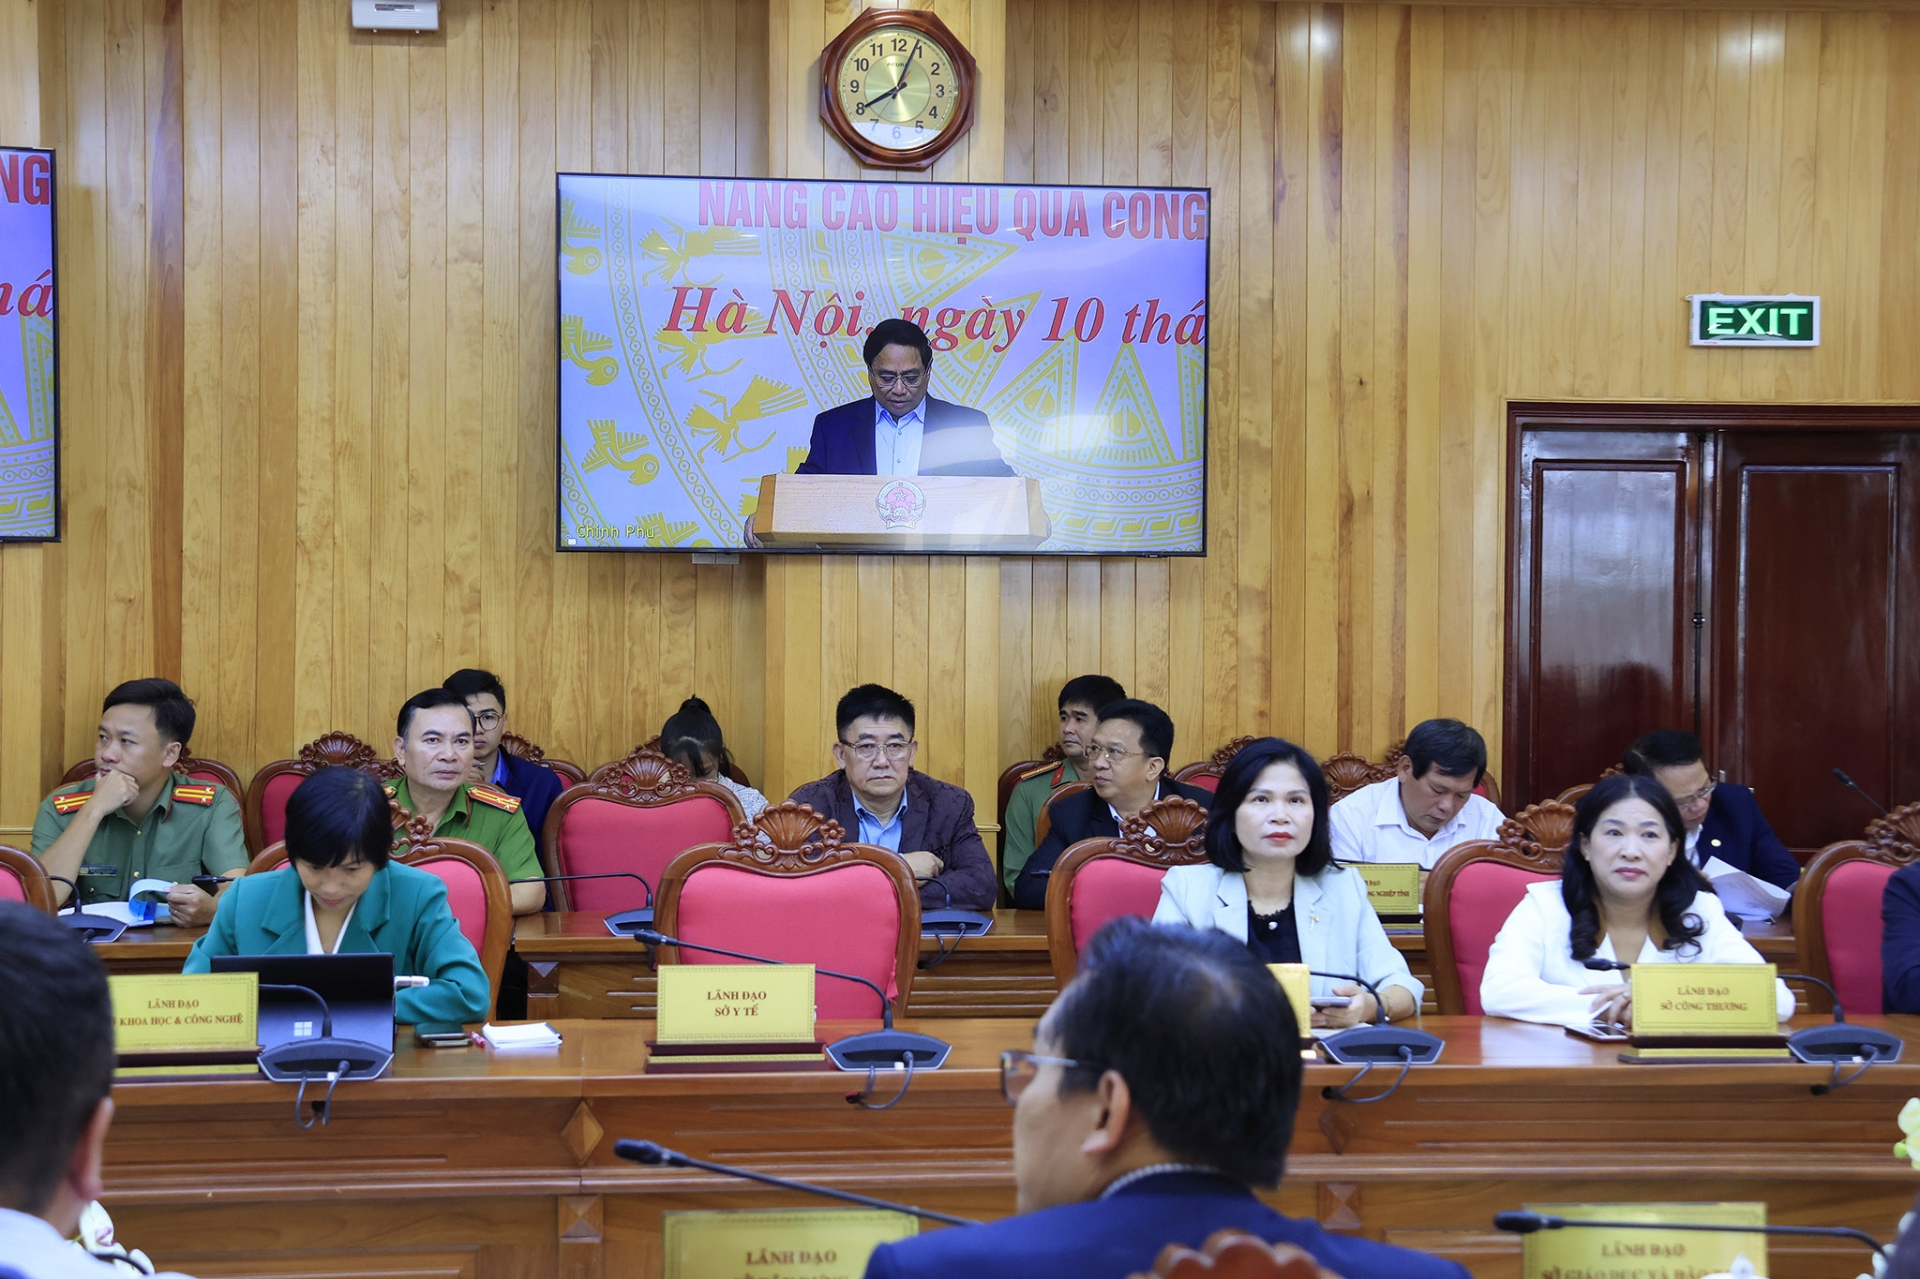 Đại biểu tham dự hội nghị tại điểm cầu tỉnh Lâm Đồng 